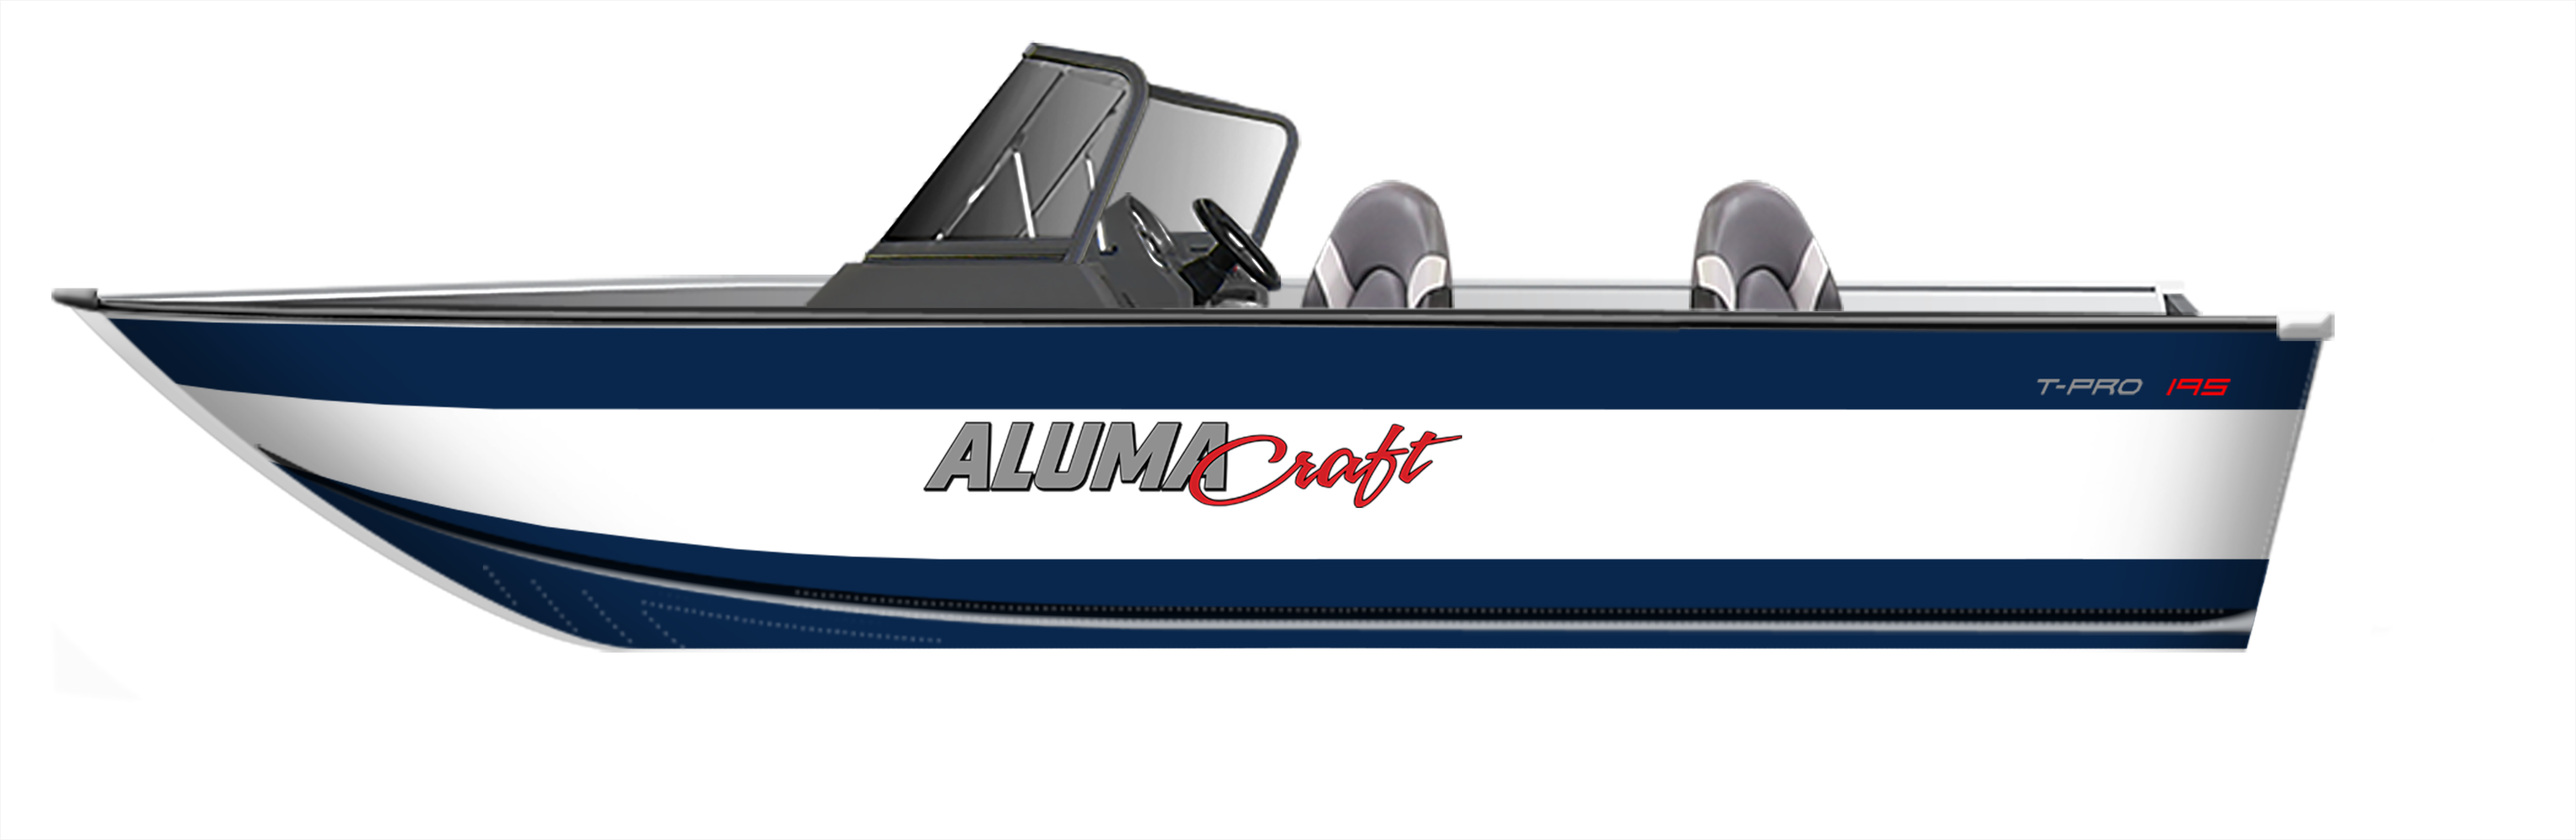 2022 Tournament Pro Series fishing boats - Alumacraft